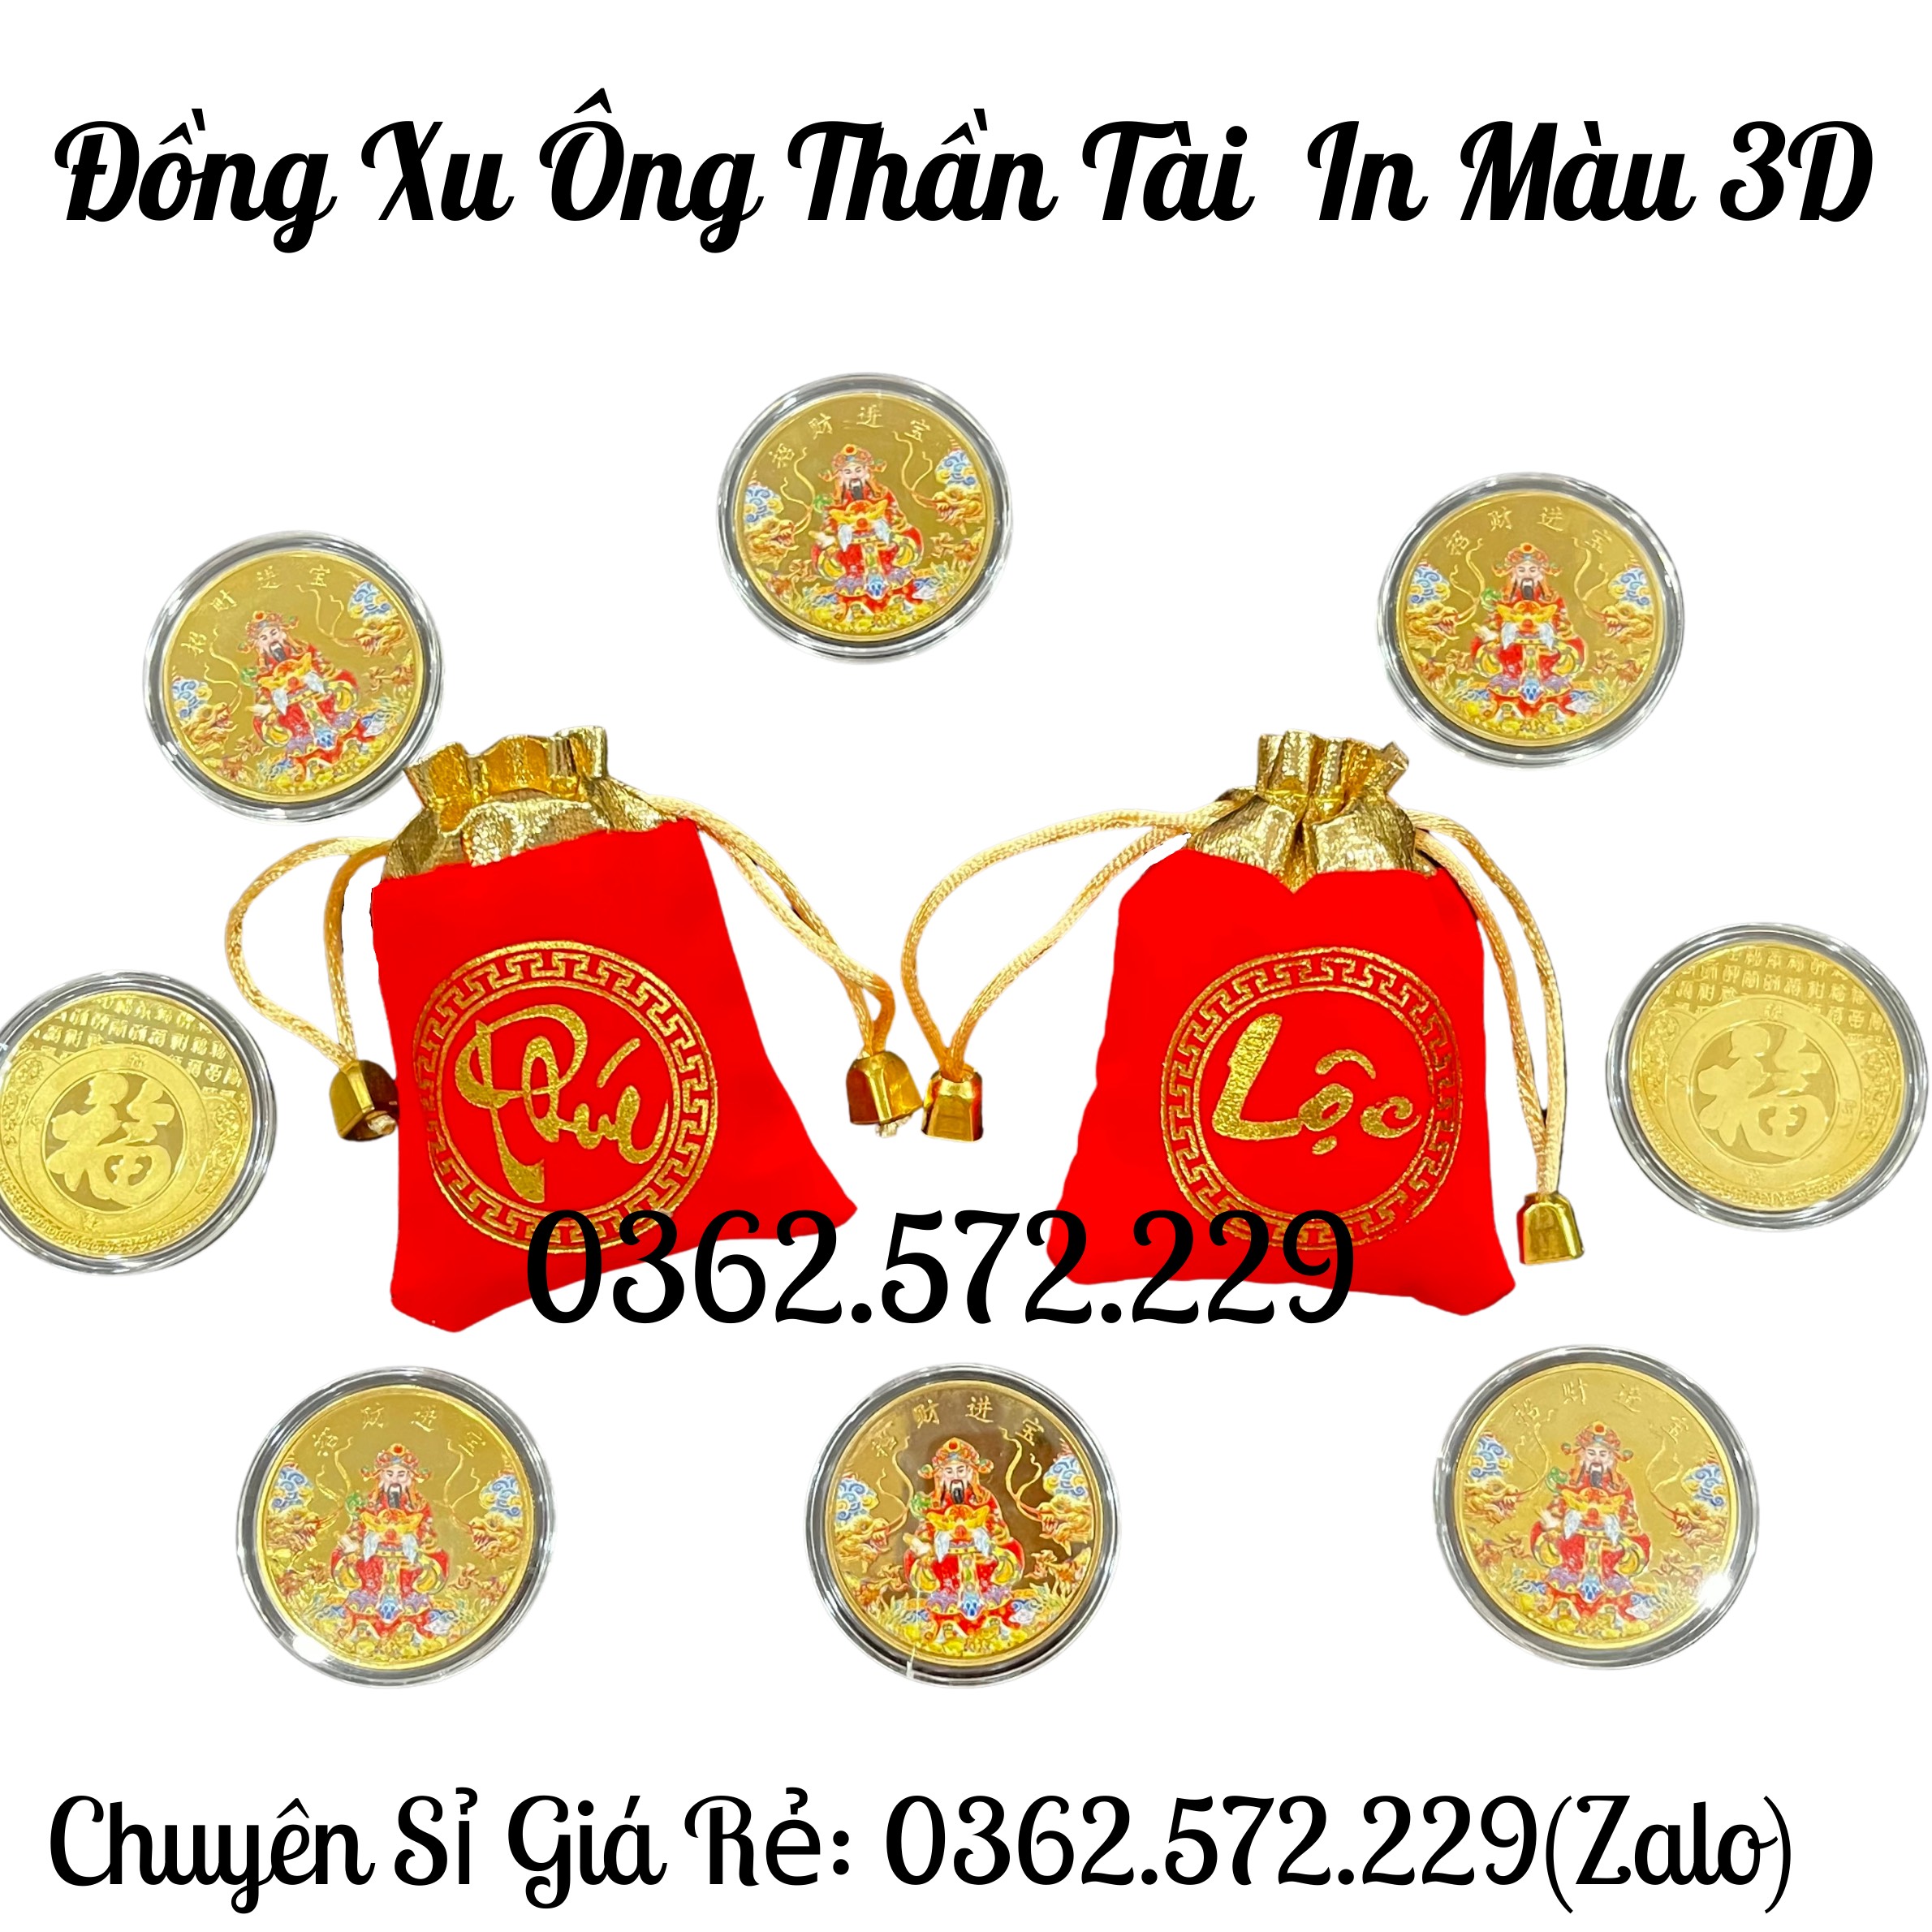 Đồng Xu Thần Tài Màu in 3D tặng Kèm Túi Gấm Phúc Lộc May Mắn Phong Thủy 